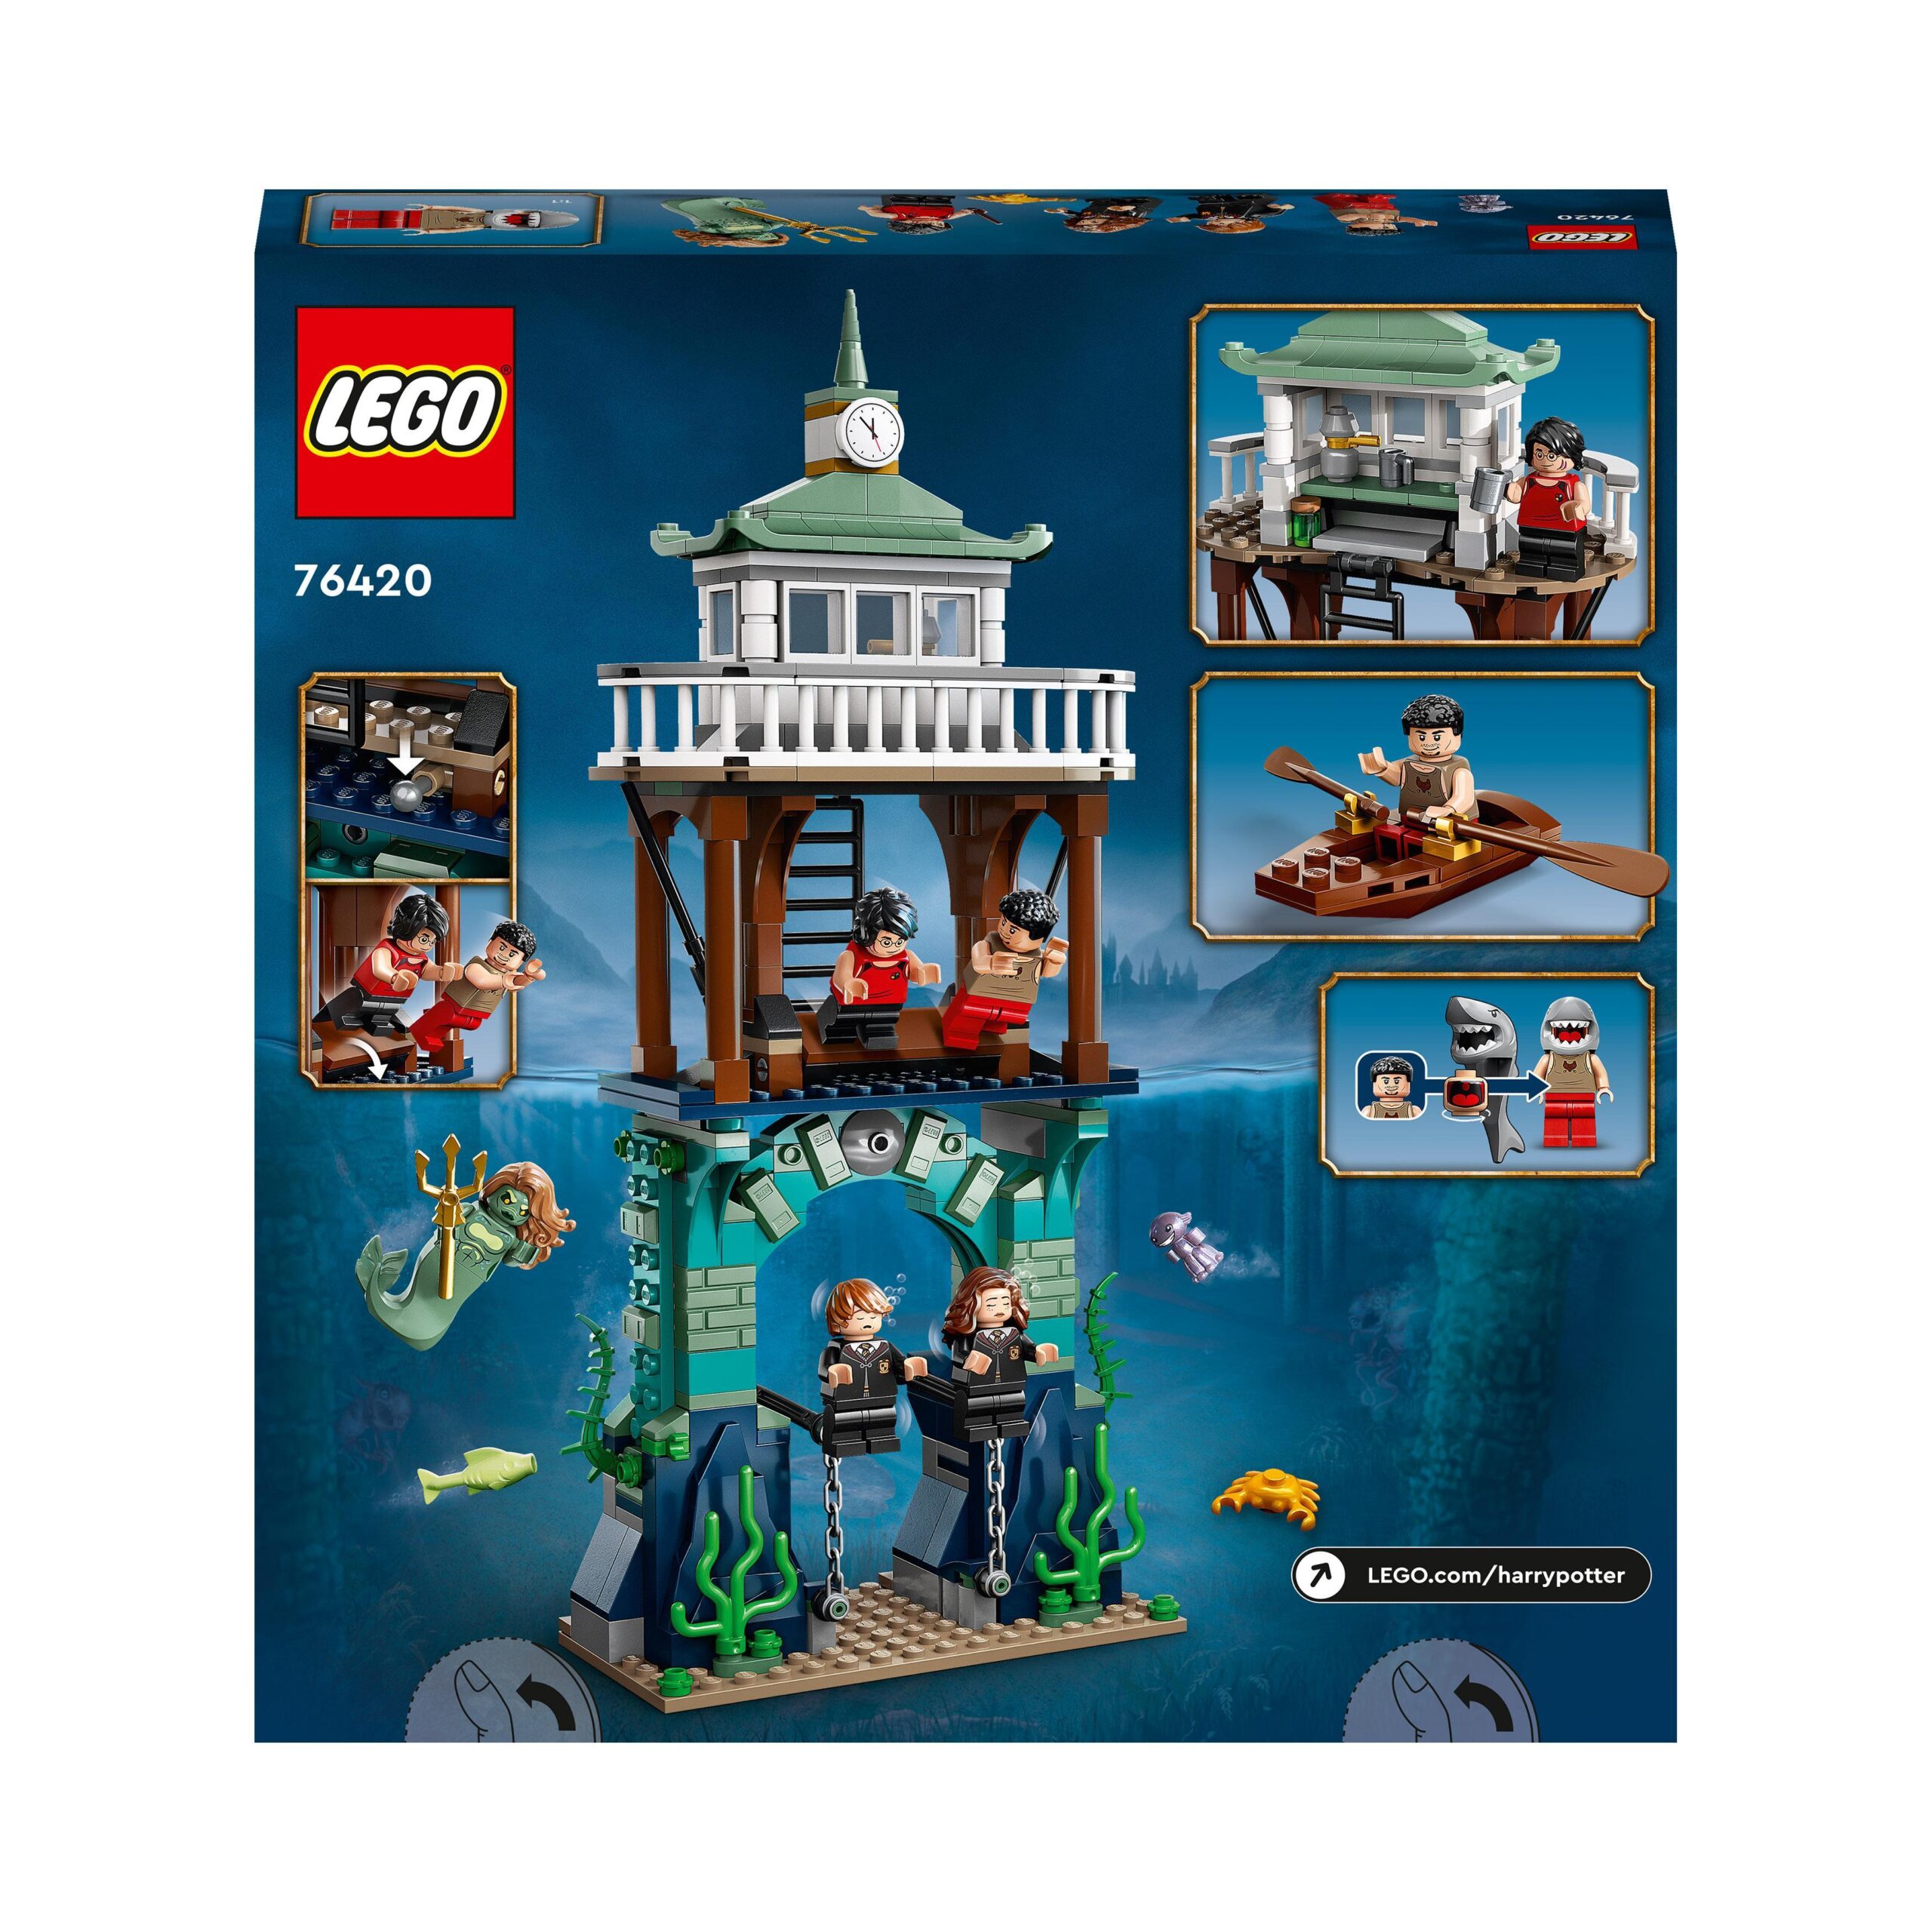 Lego harry potter 76420 torneo dei tremaghi: il lago nero, giochi per bambini e bambine con barca giocattolo e 5 minifigure - Harry Potter, LEGO® Harry Potter™